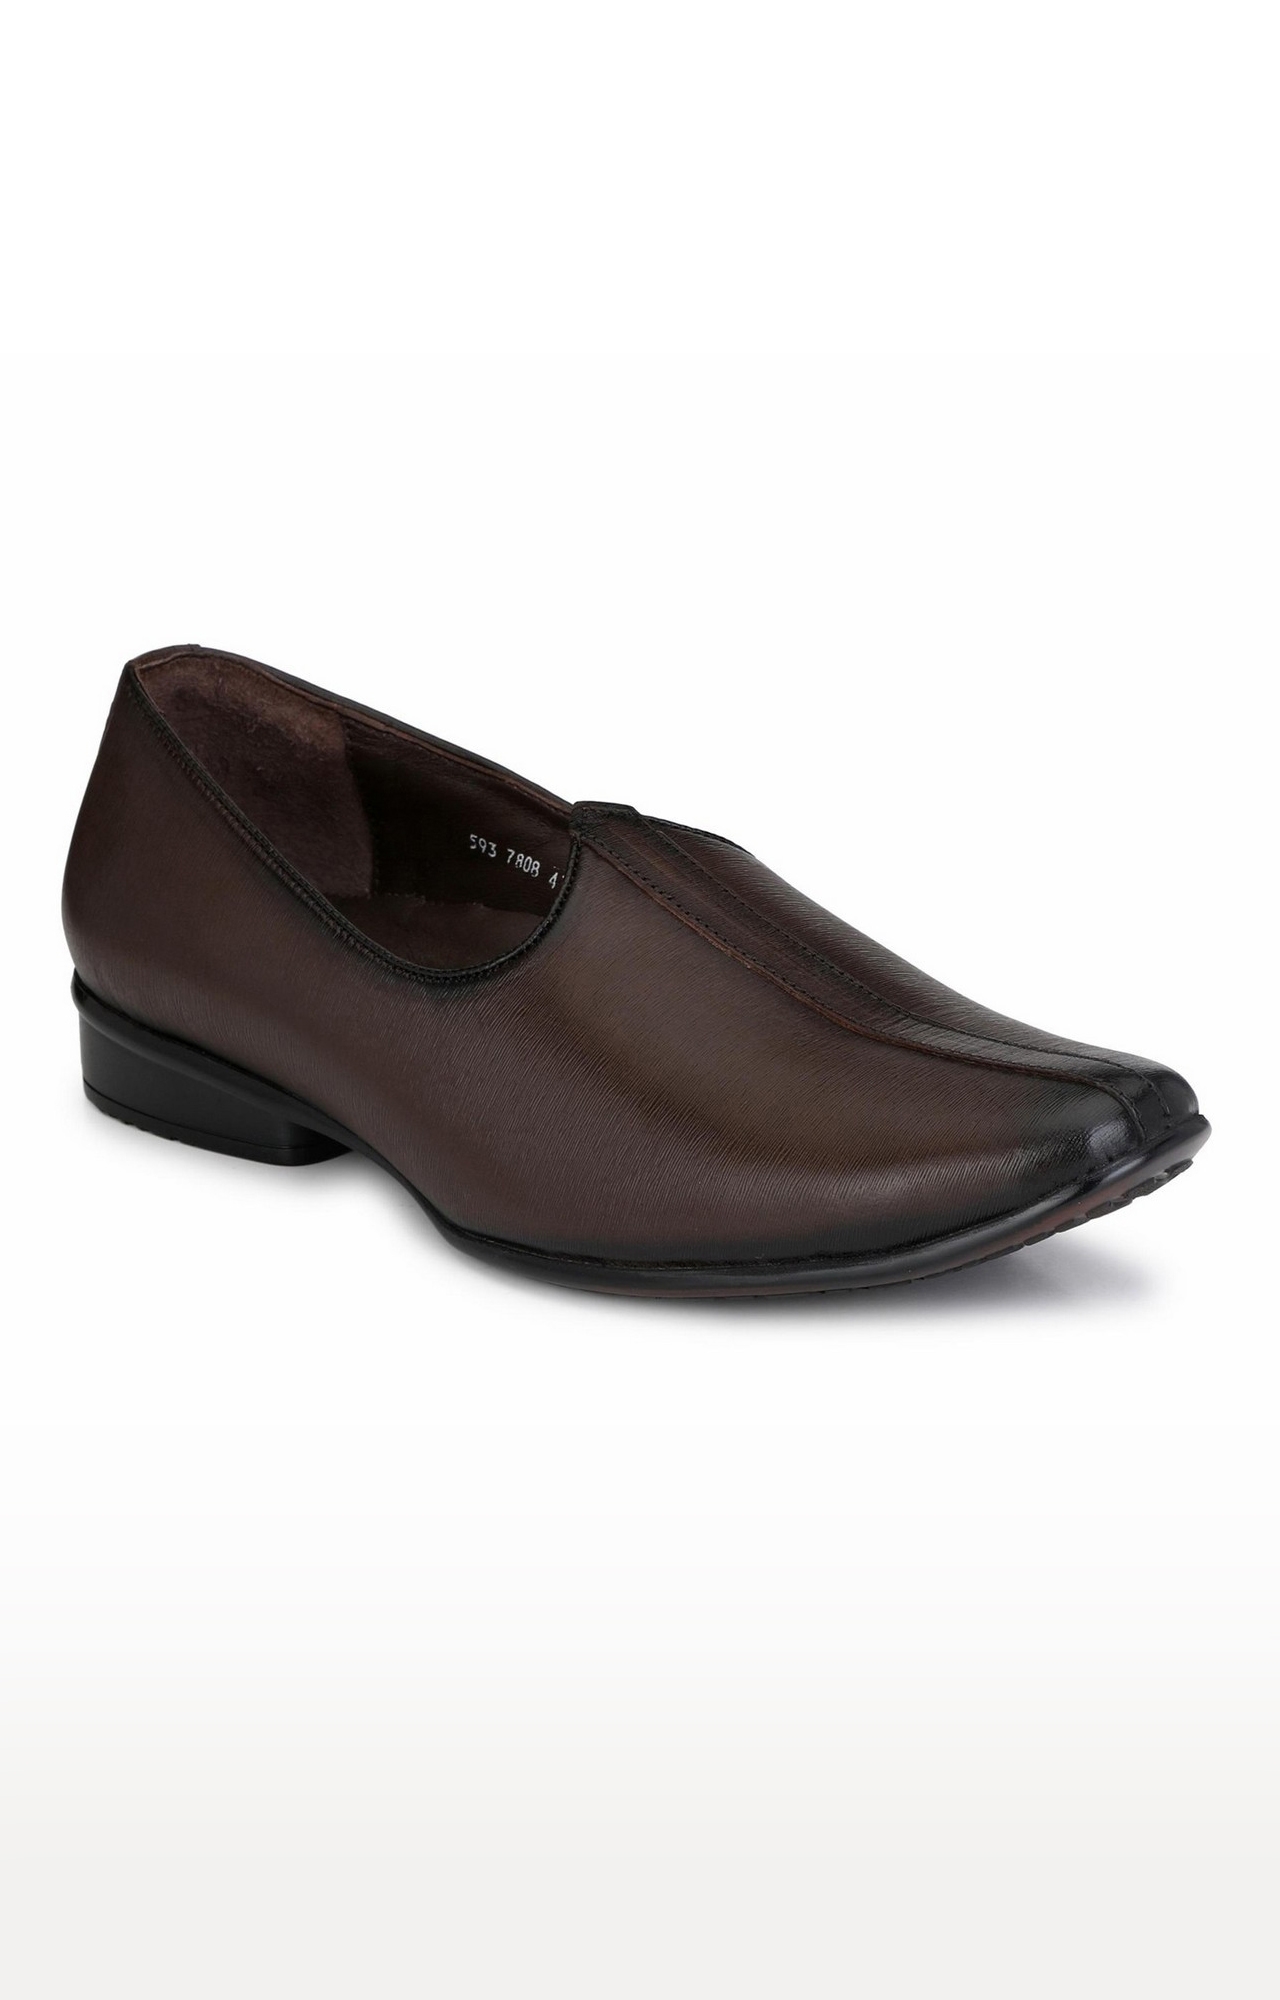 Hitz | Hitz Brown Leather Slip-On Formal Shoes for Men  0